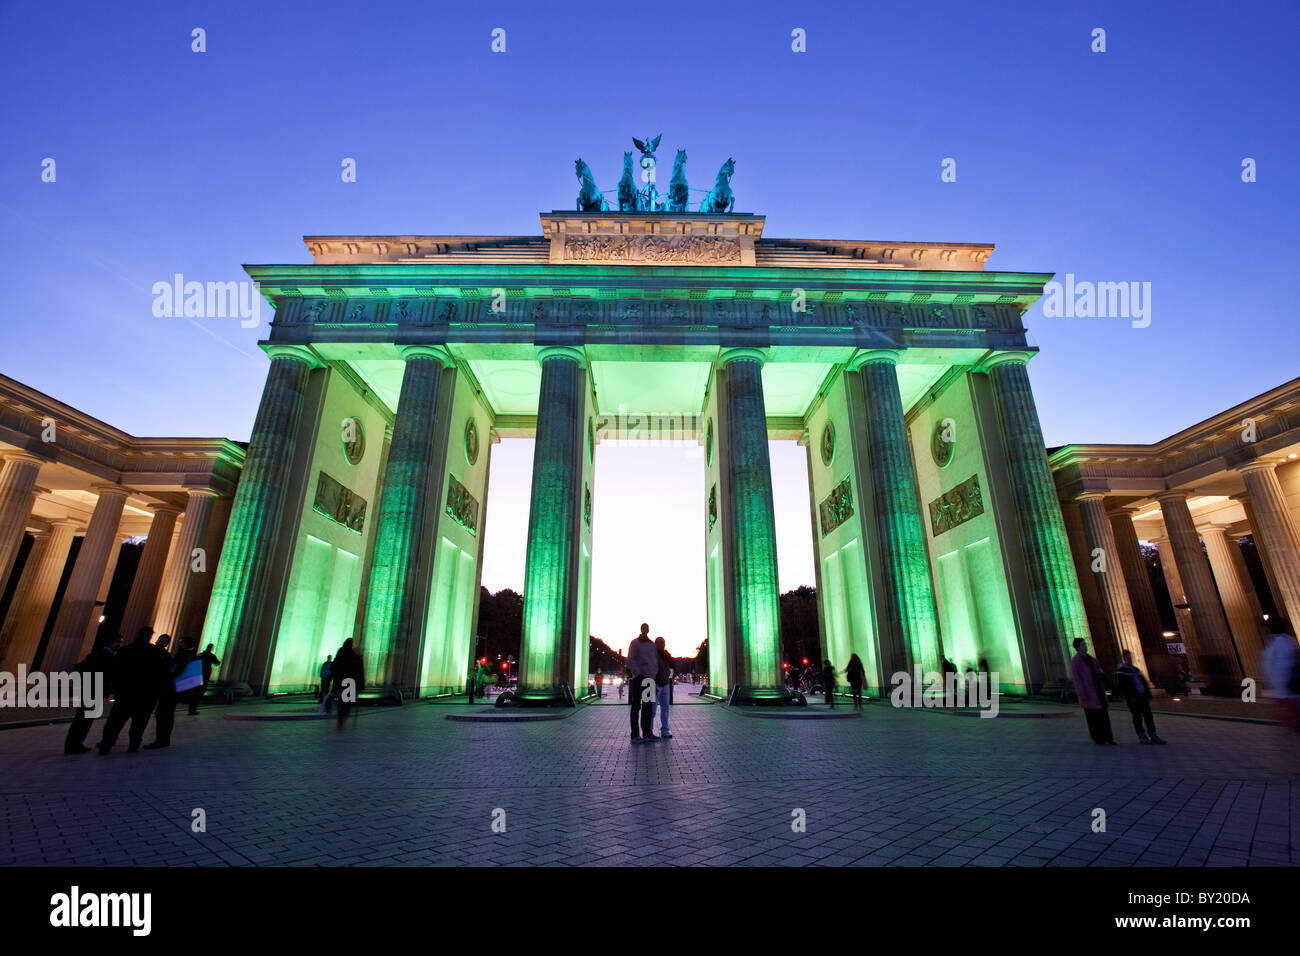 Alemania,Berlín, Puerta de Brandenburgo iluminada al anochecer, durante el Festival de las luces Foto de stock